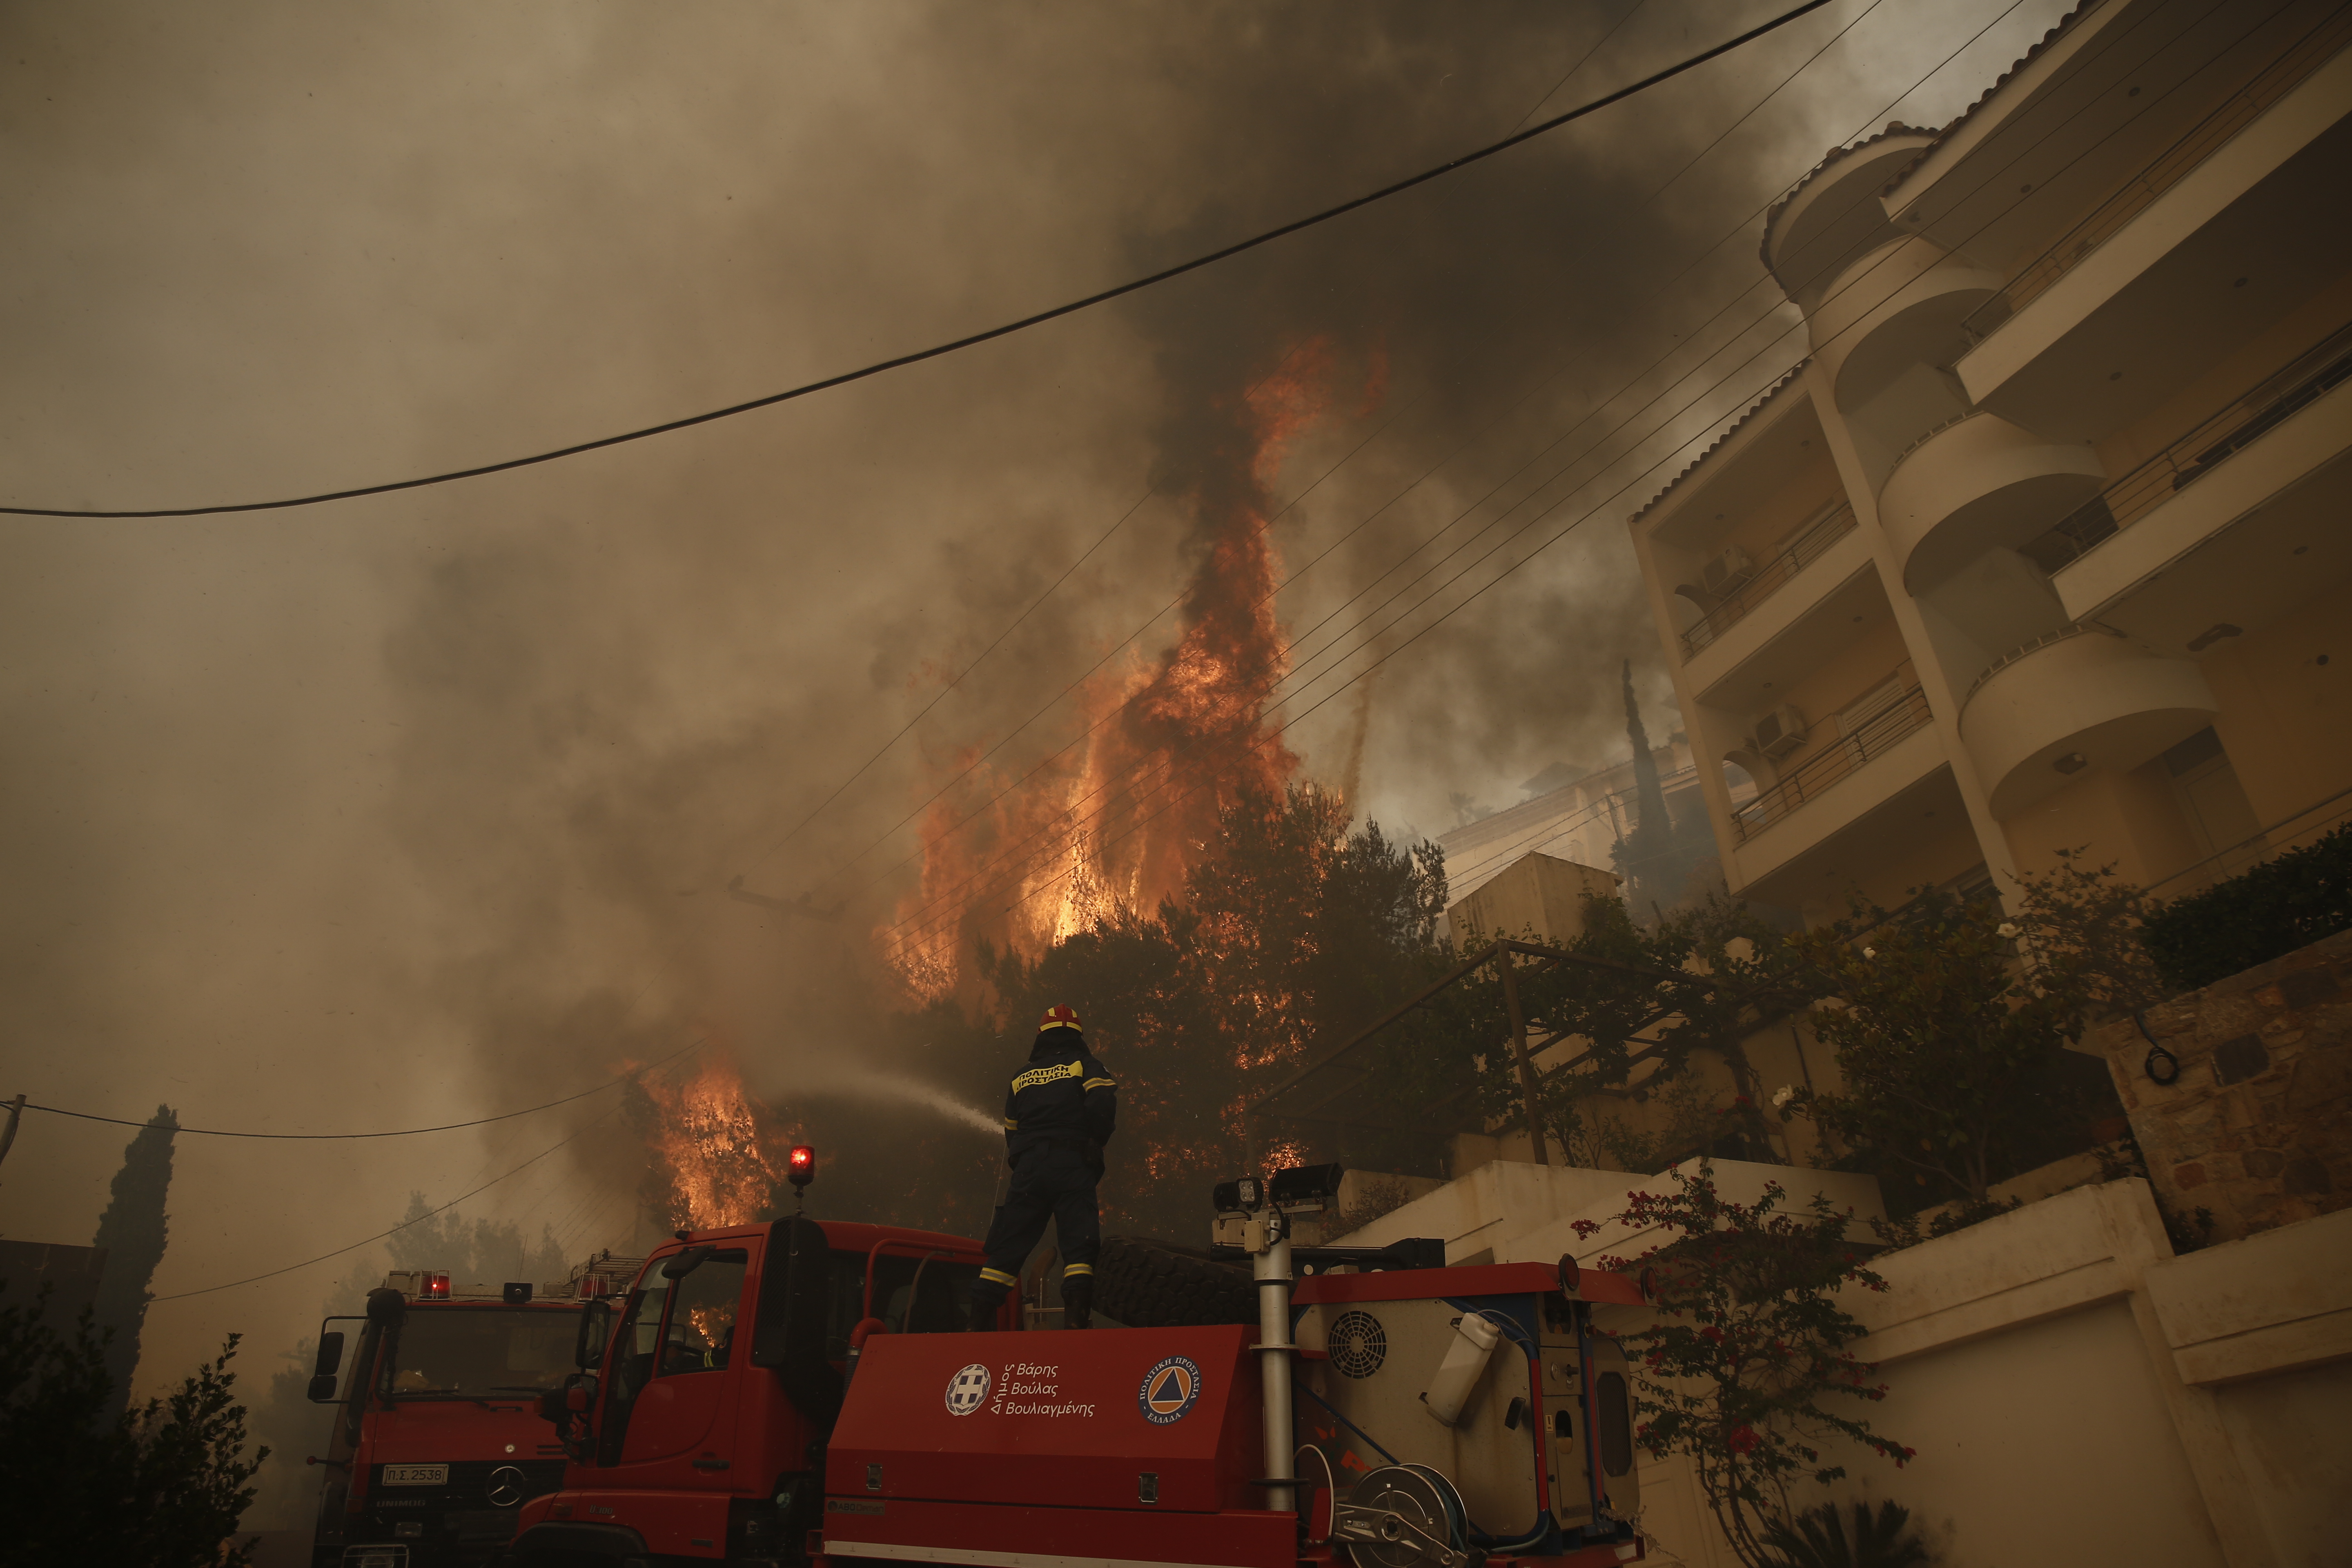 Πυροσβέστες επιχειρούν στην κατάσβεση φωτιάς που καίει μέσα σε κατοικημένη περιοχή στην Άνω Βούλα, Σάββατο 4 Ιουνίου 2022. Προς τη Βούλα έχει κινηθεί η φωτιά, που ξέσπασε νωρίτερα σε περιοχή της Άνω Γλυφάδας. Κι εκεί πλέον αρχίζει να απειλείται κατοικημένη περιοχή. Μάλιστα ο δήμαρχος Βάρης-Βούλας-Βουλιαγμένης Γρηγόρης Κωνσταντέλλος ζήτησε να γίνει εκκένωση της περιοχής Πανόραμα, από την οδό Υμηττού και προς τον ορεινό όγκο και οι κάτοικοι να συνεργαστούν με τις Αρχές. ΑΠΕ-ΜΠΕ/ΑΠΕ-ΜΠΕ/ΓΙΑΝΝΗΣ ΚΟΛΕΣΙΔΗΣ